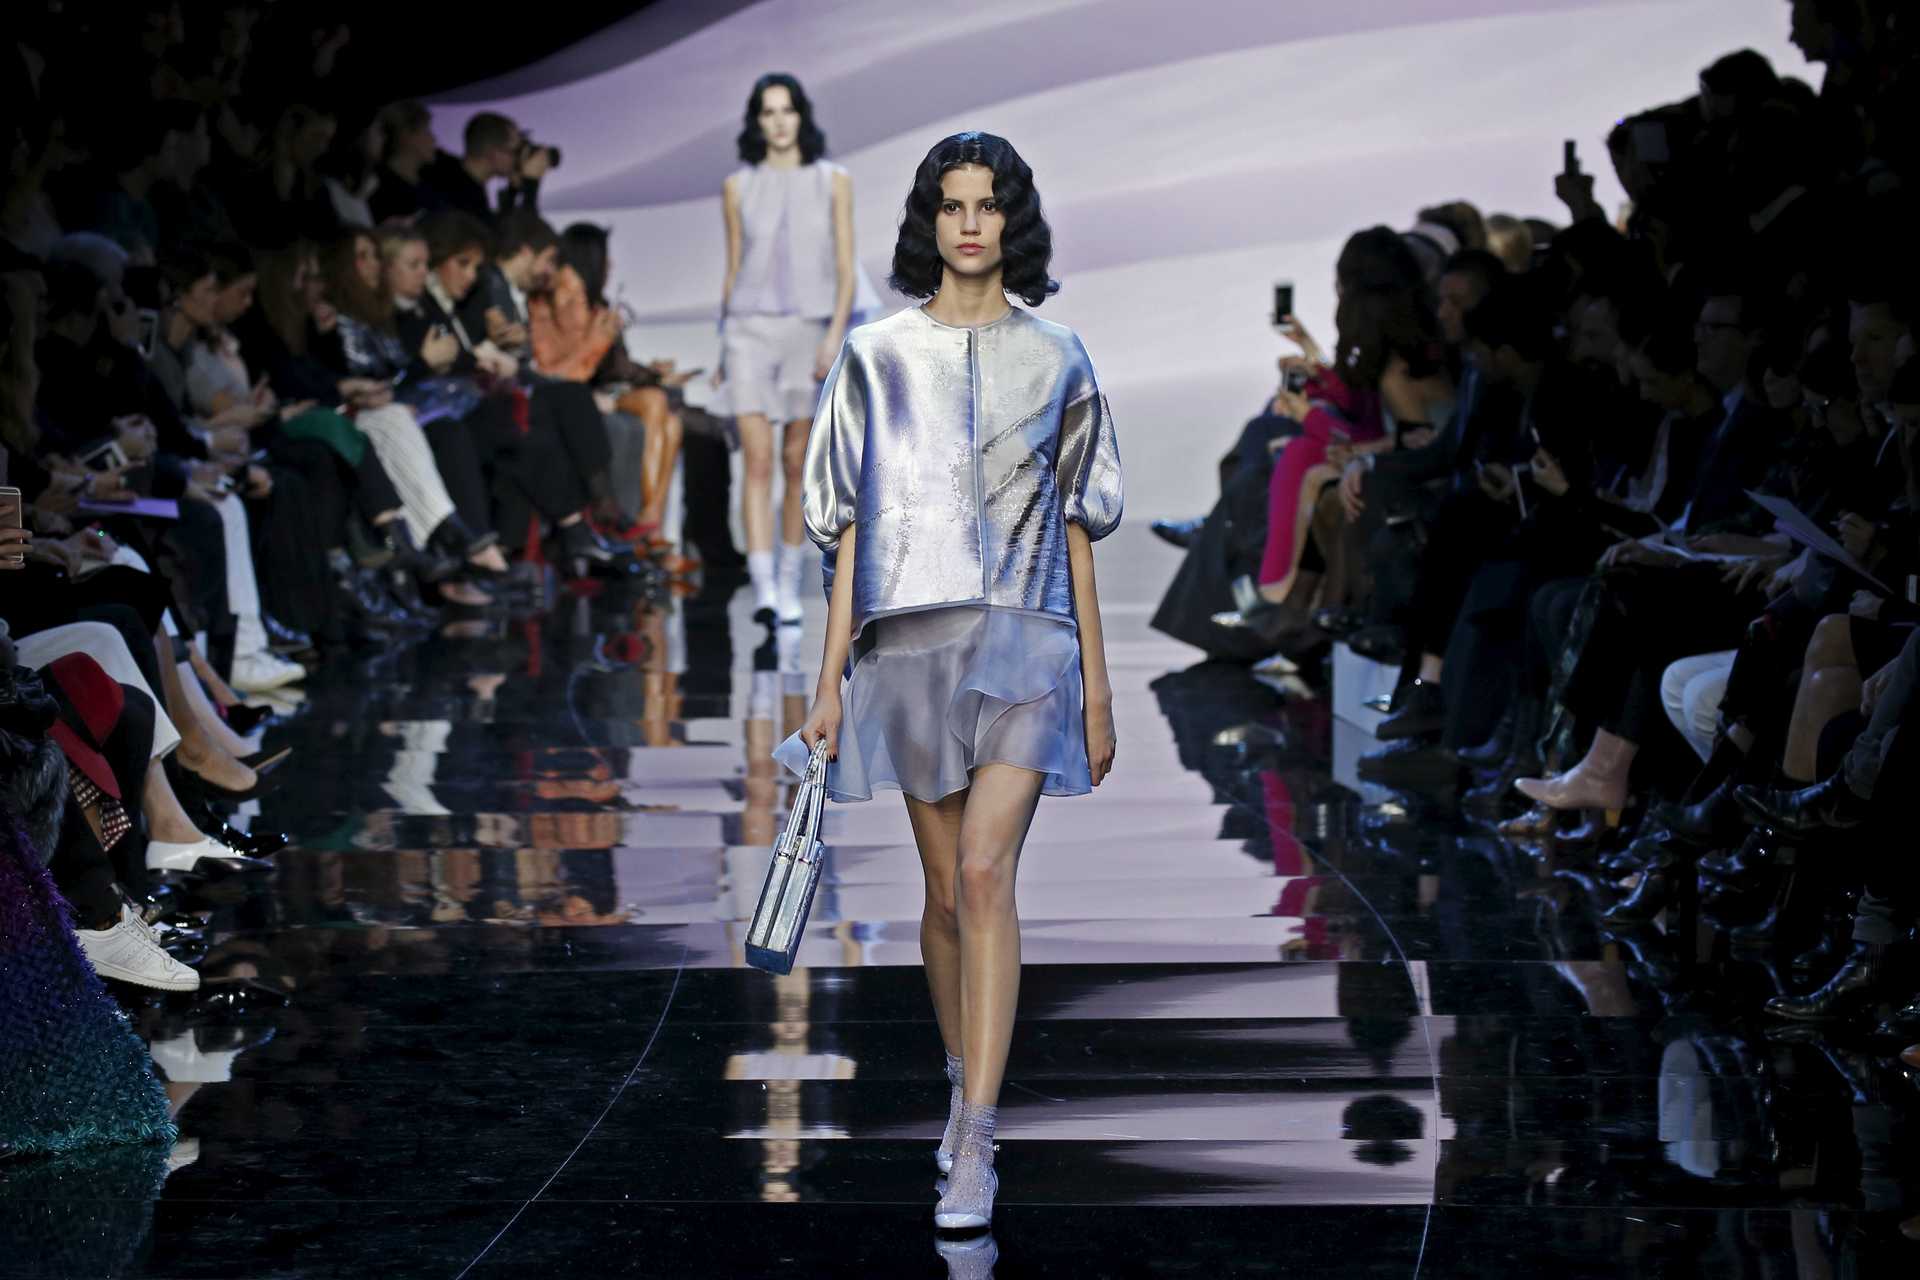 A model presents a creation by Italian designer Giorgio Armani as part of his Haute Couture Spring/Summer 2016 fashion show for Giorgio Armani Prive in Paris